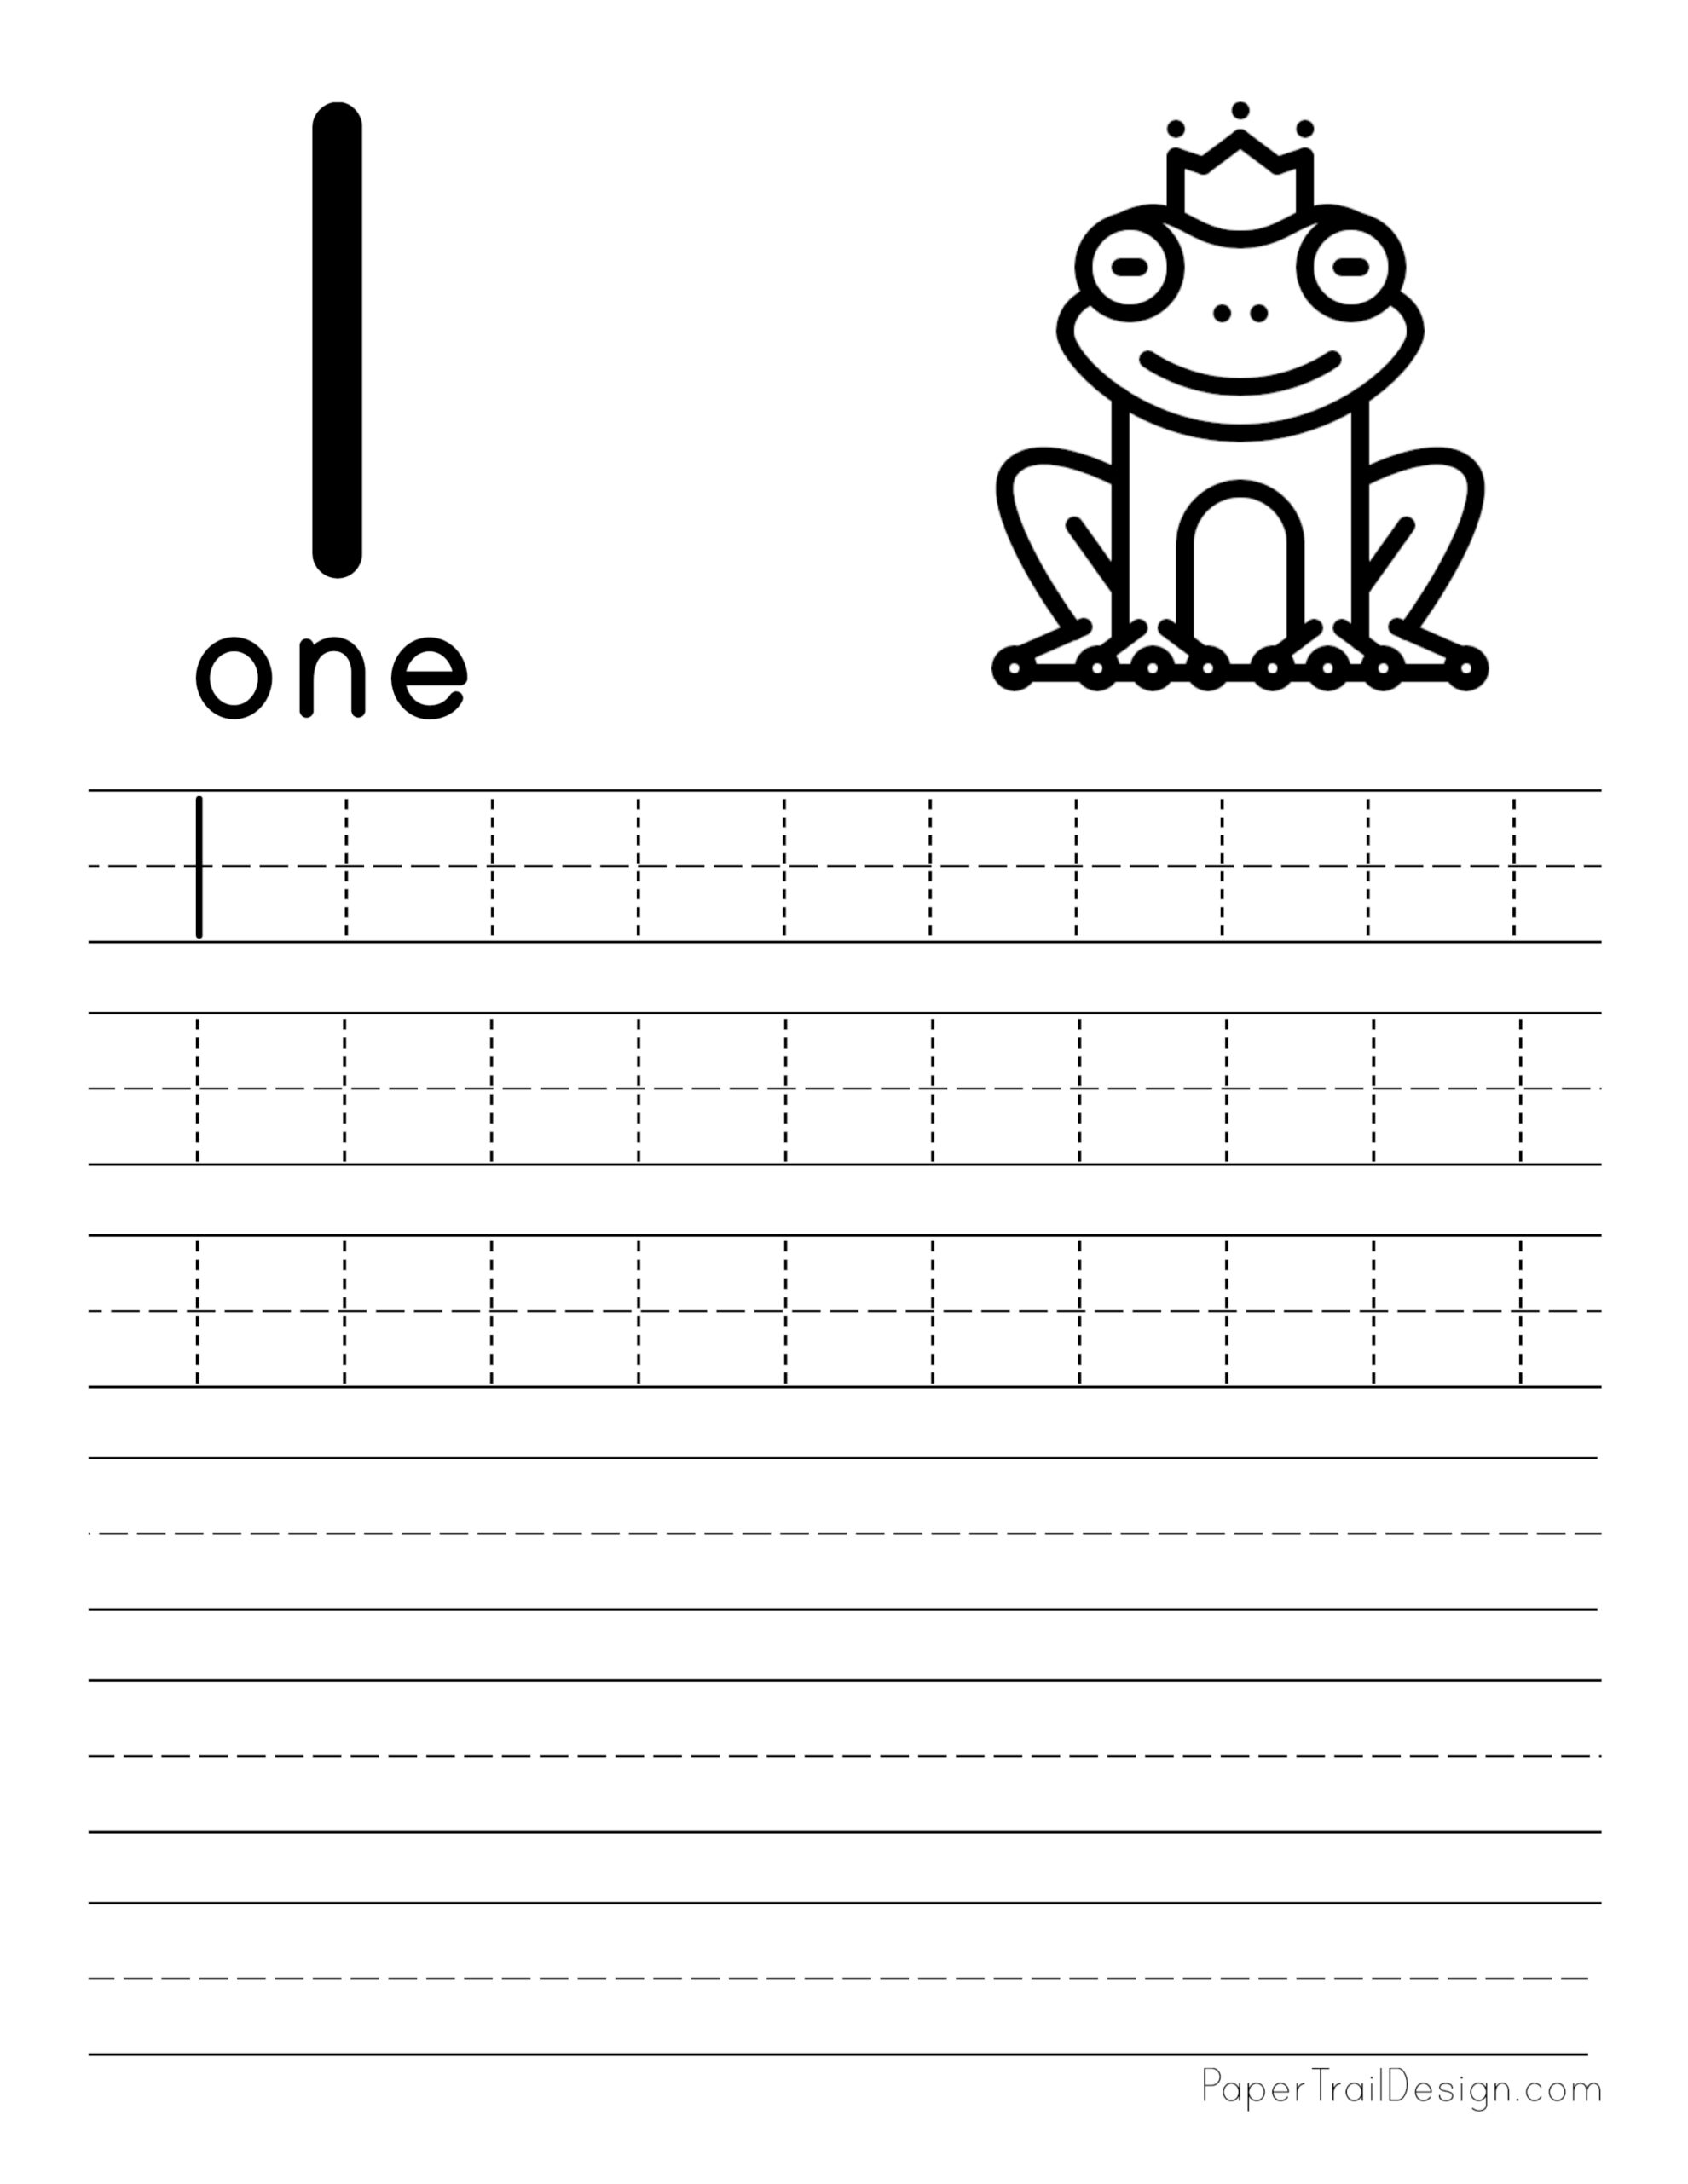 tracing-number-1-worksheet-worksheets-for-kindergarten